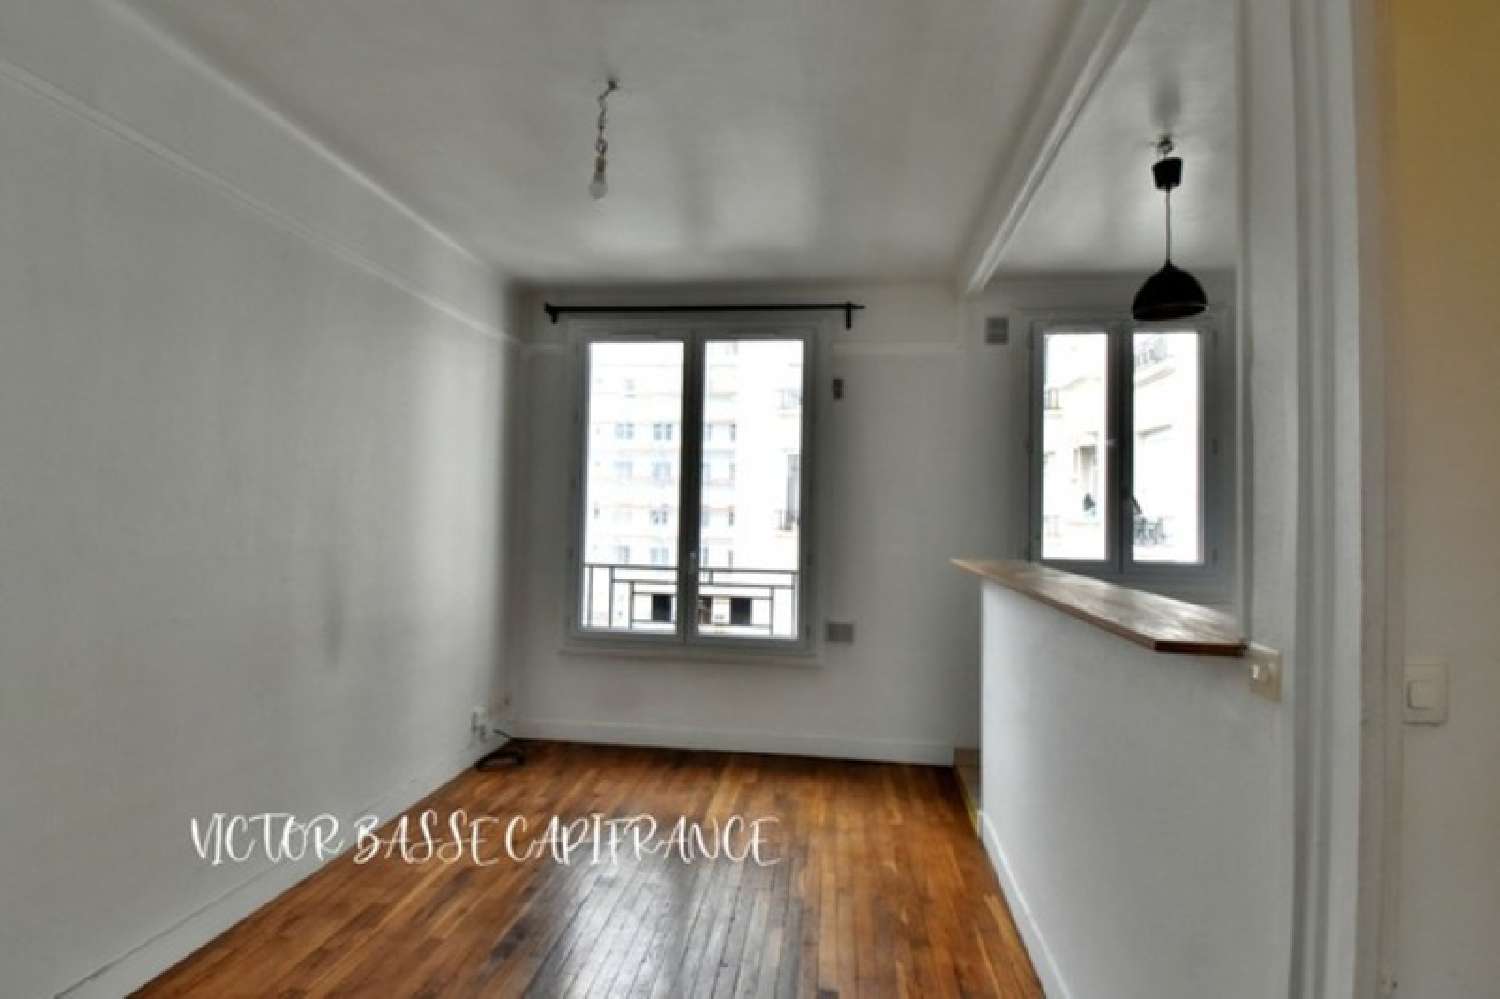  à vendre appartement Courbevoie Hauts-de-Seine 6